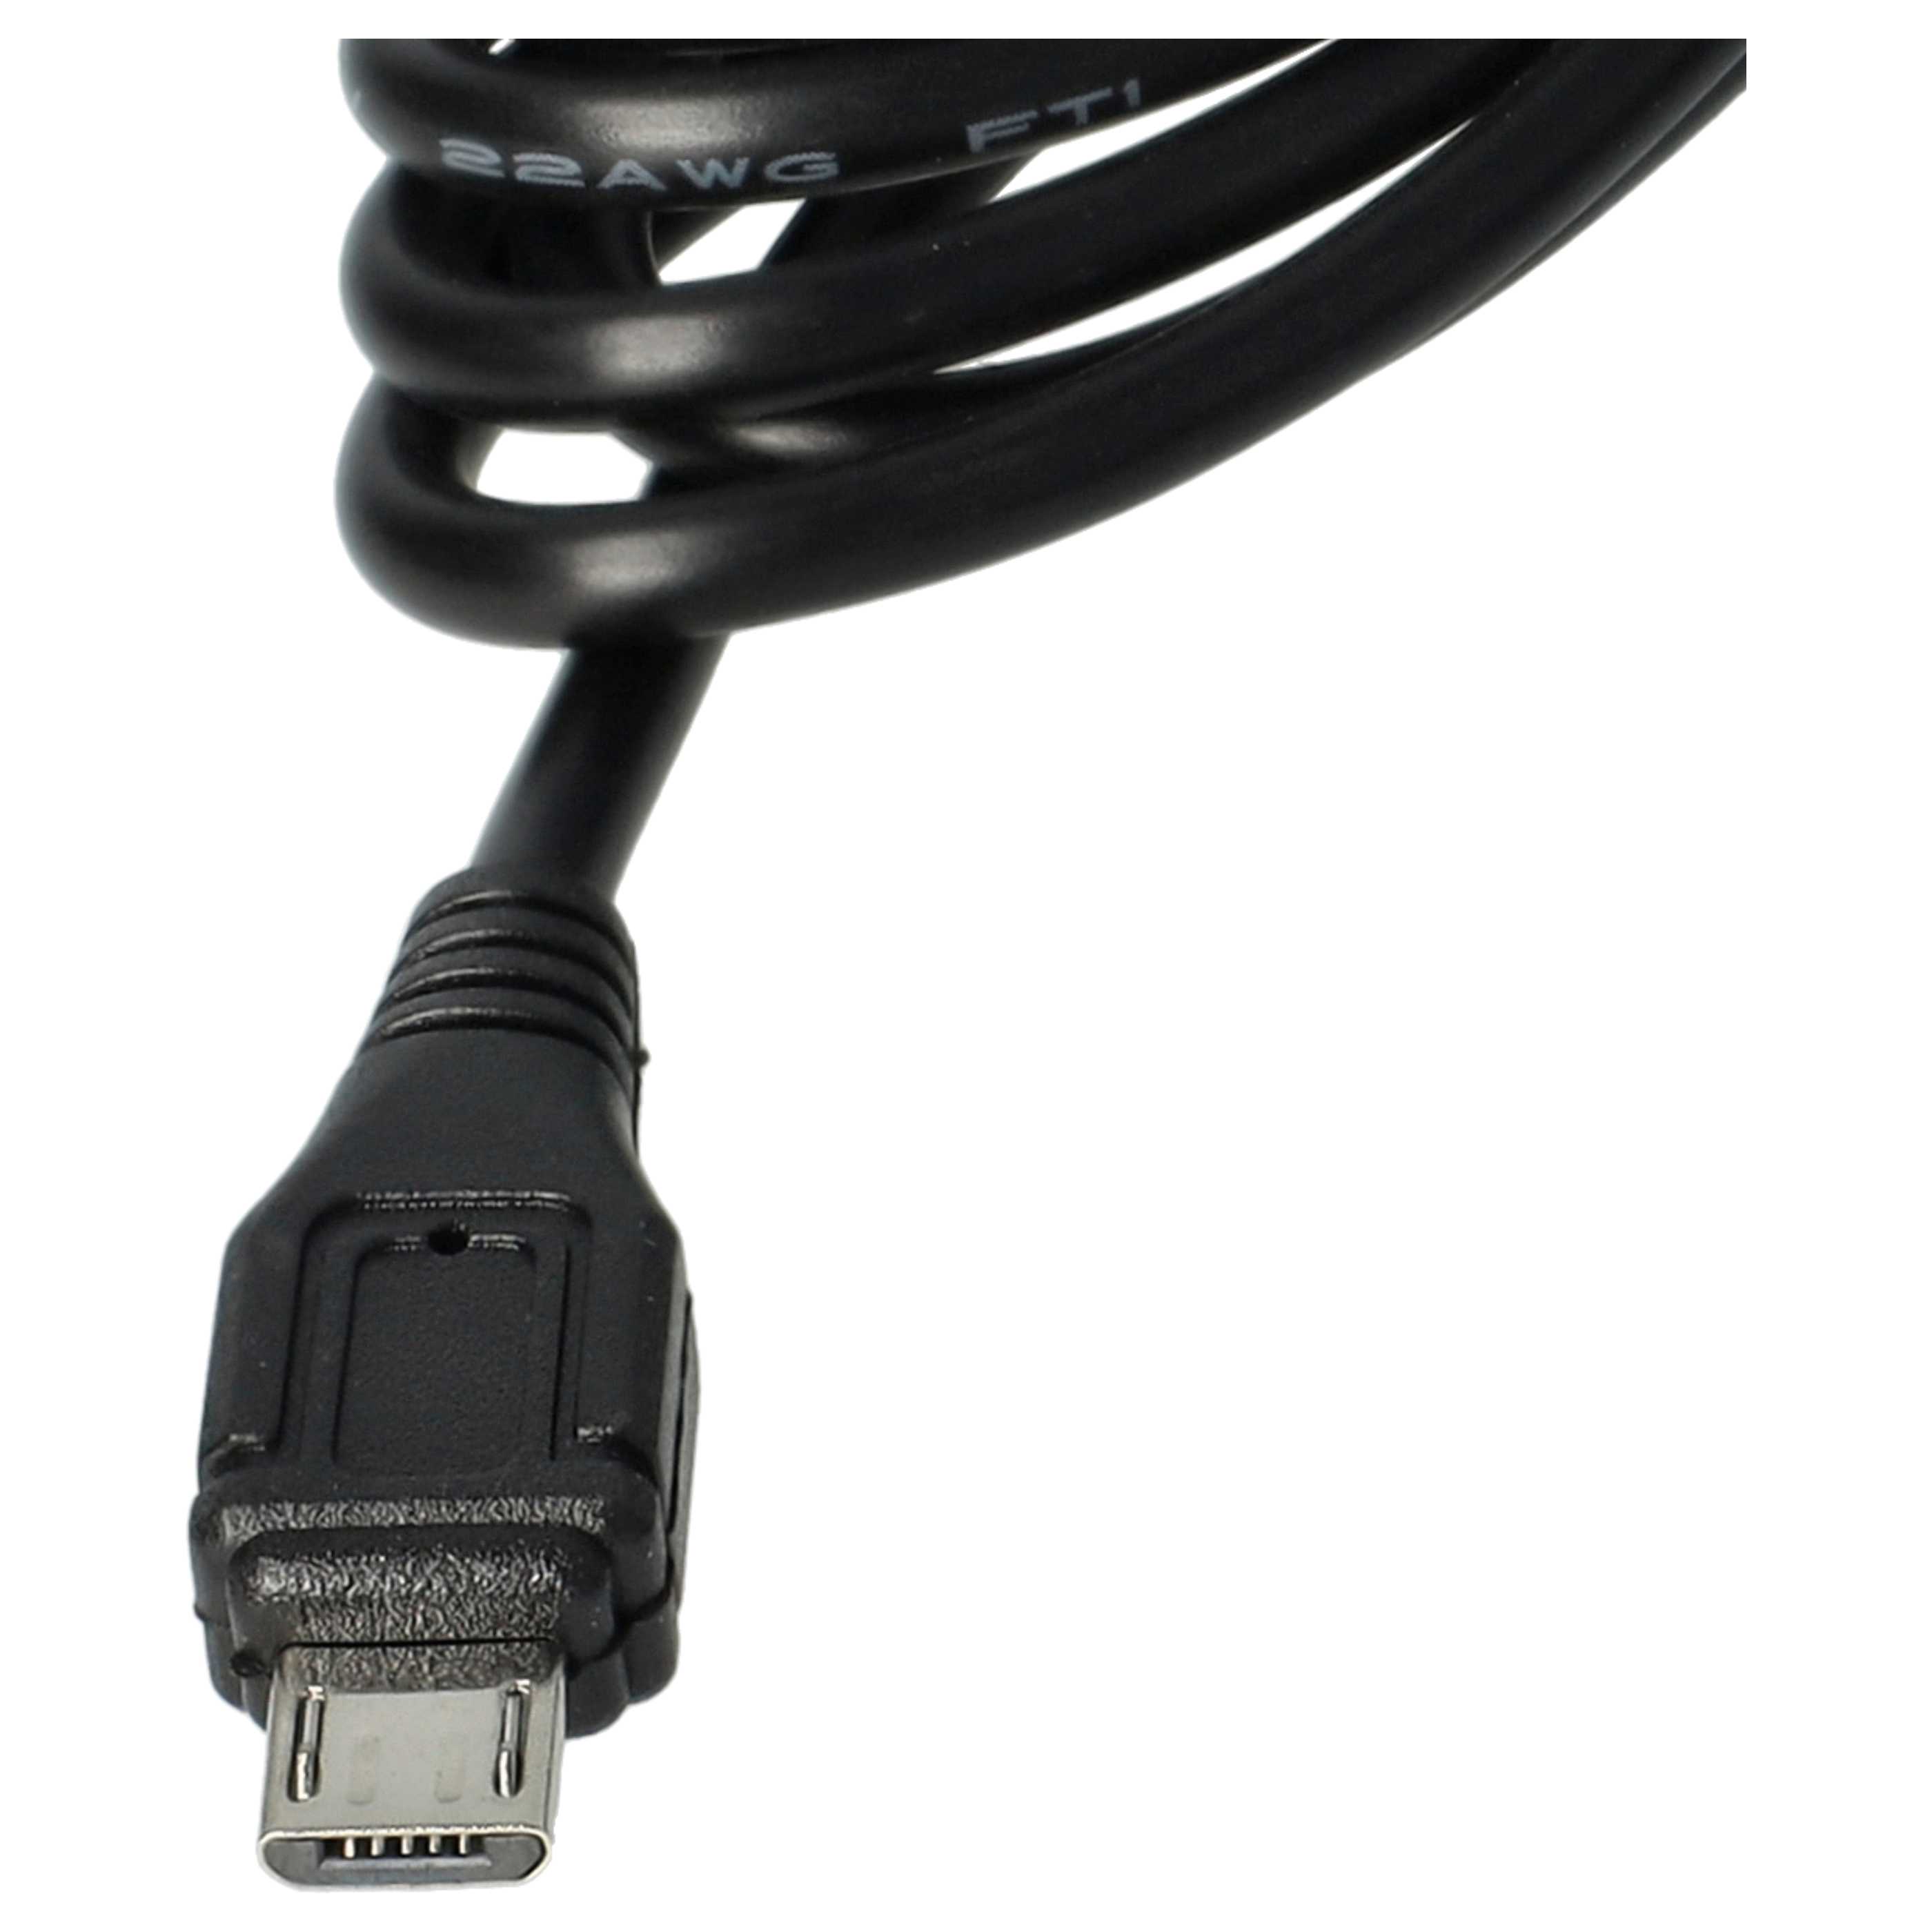 Cargador coche micro USB 2,0 A para smartphone, GPS Olympia, etc. - Cable de carga